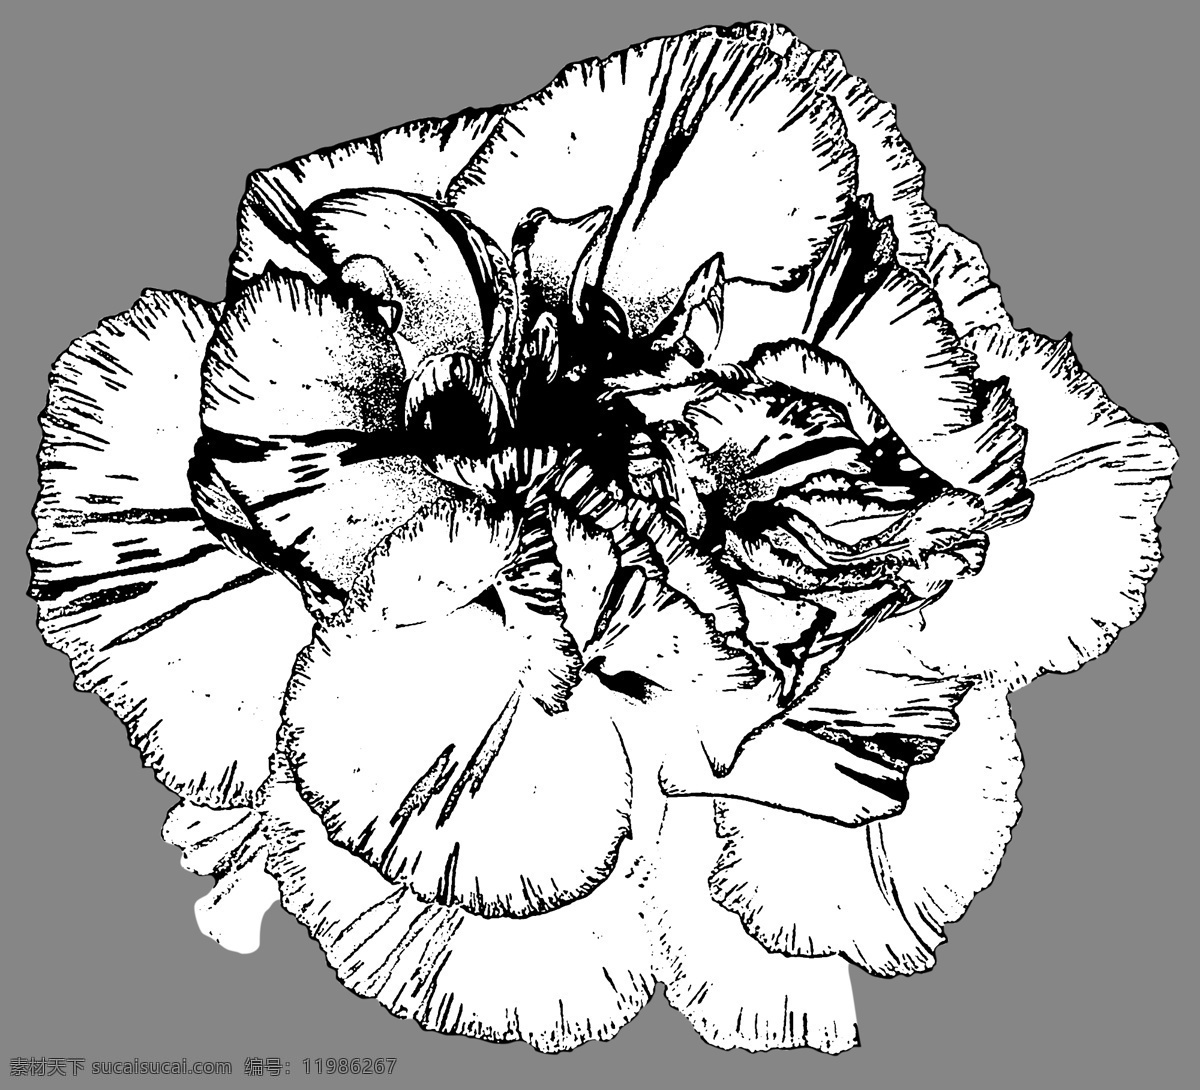 康乃馨 手绘 花朵 手绘花朵 母亲花 教师花朵 素描 黑白花朵 节日元素